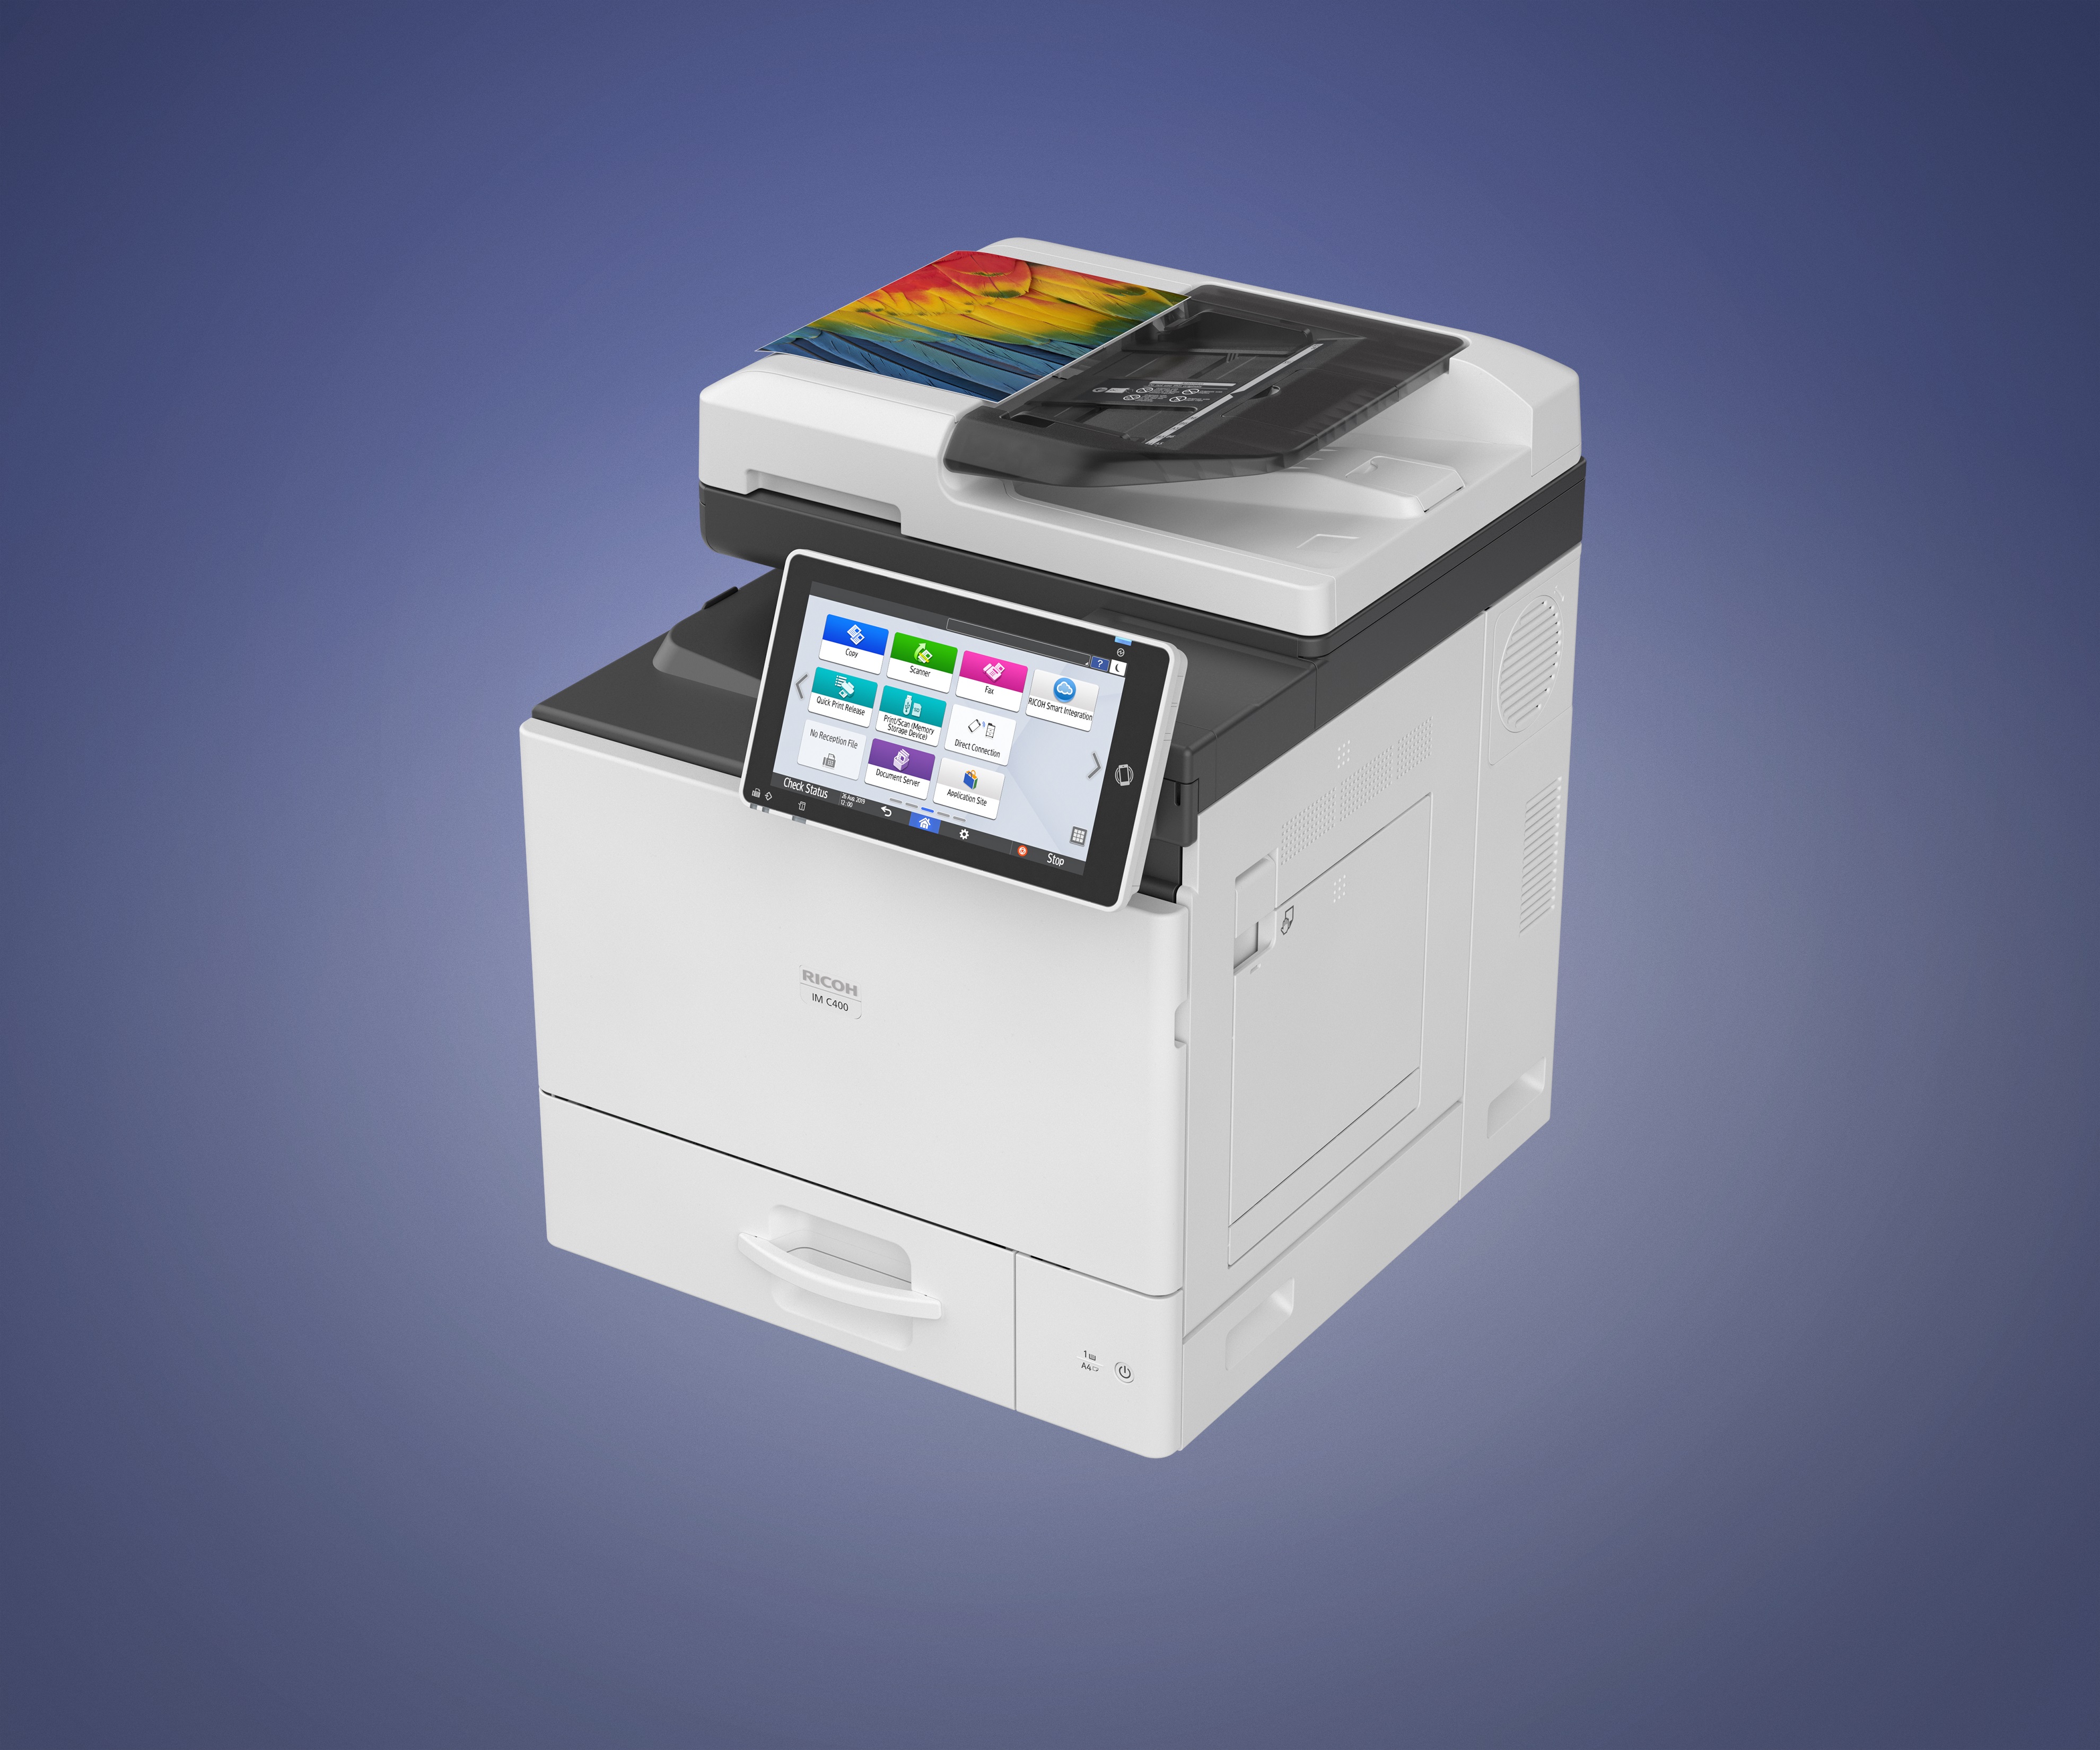 La nueva impresora multifunción inteligente en color RICOH IM C400 A4